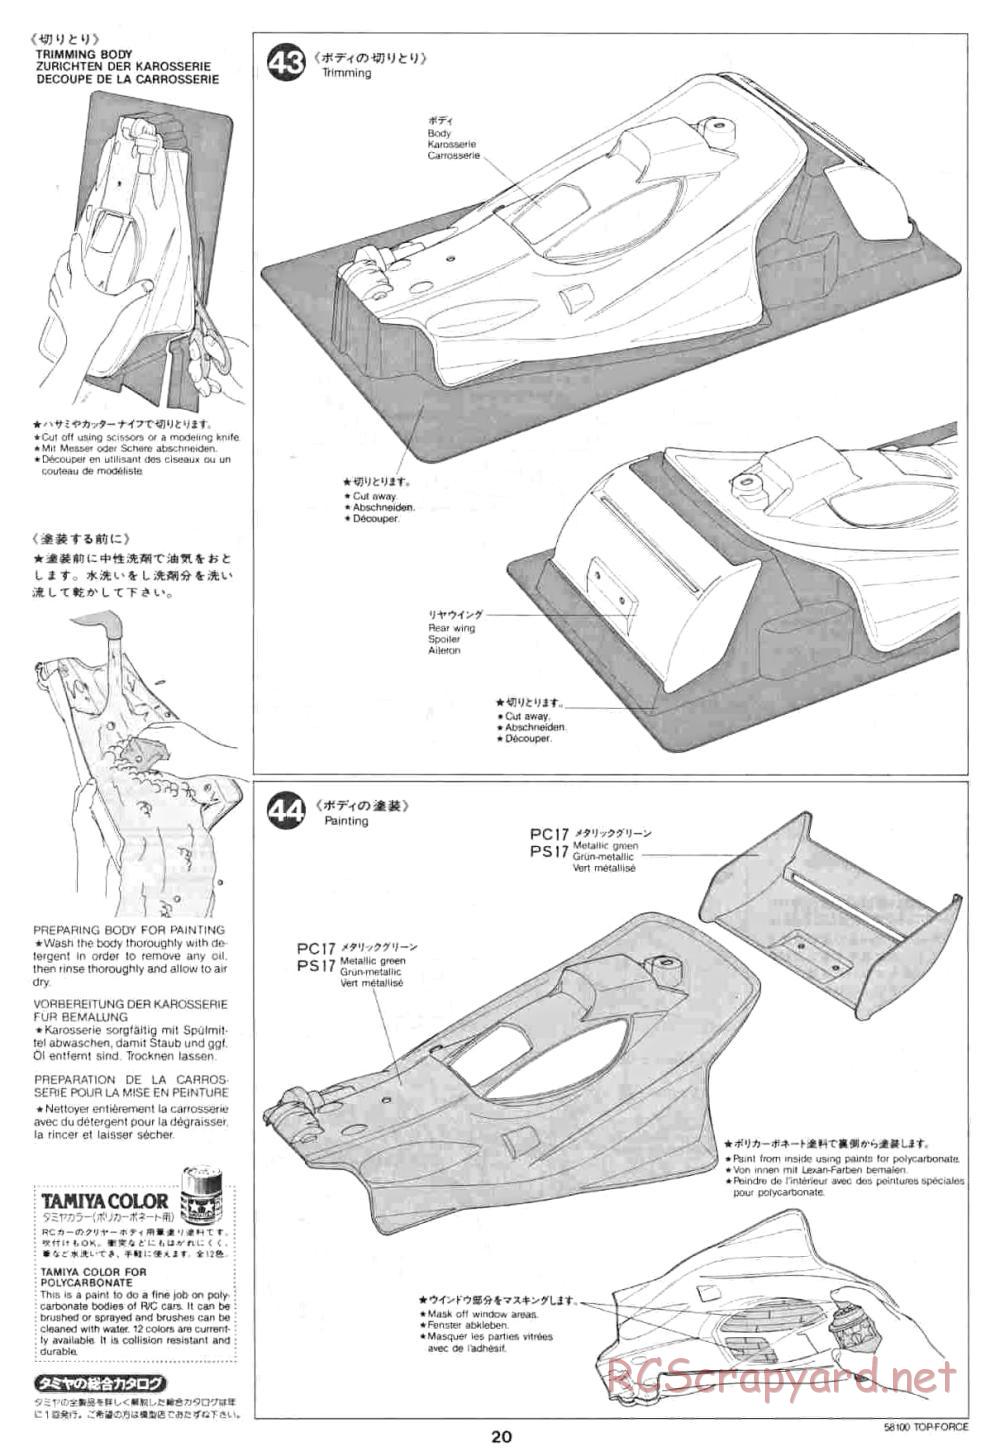 Tamiya - Top Force - 58100 - Manual - Page 20